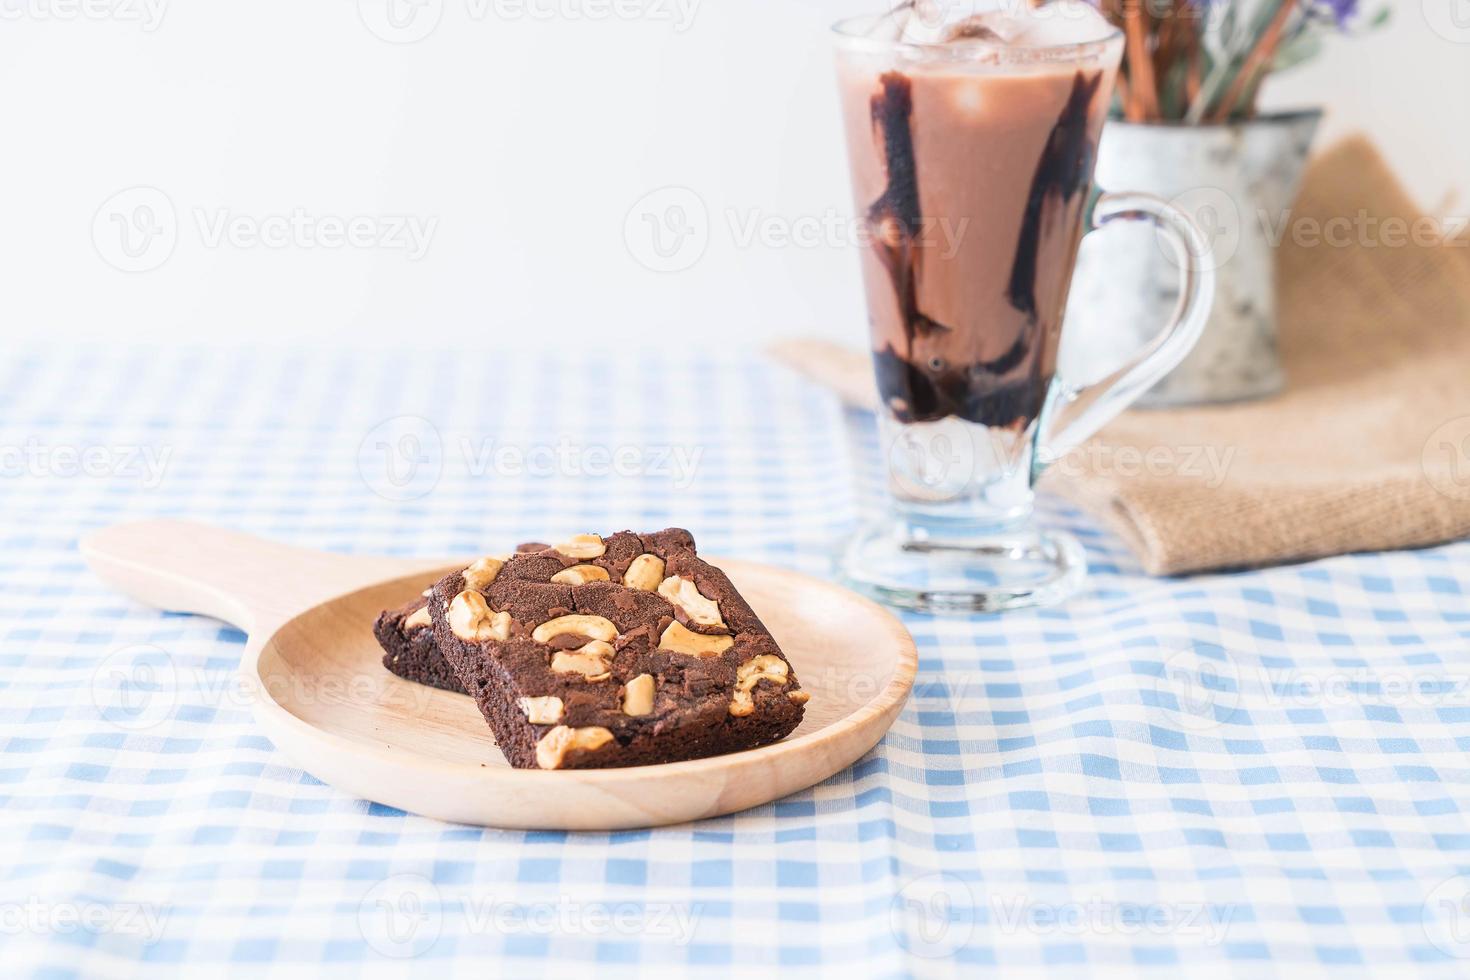 brownies au chocolat sur la table photo